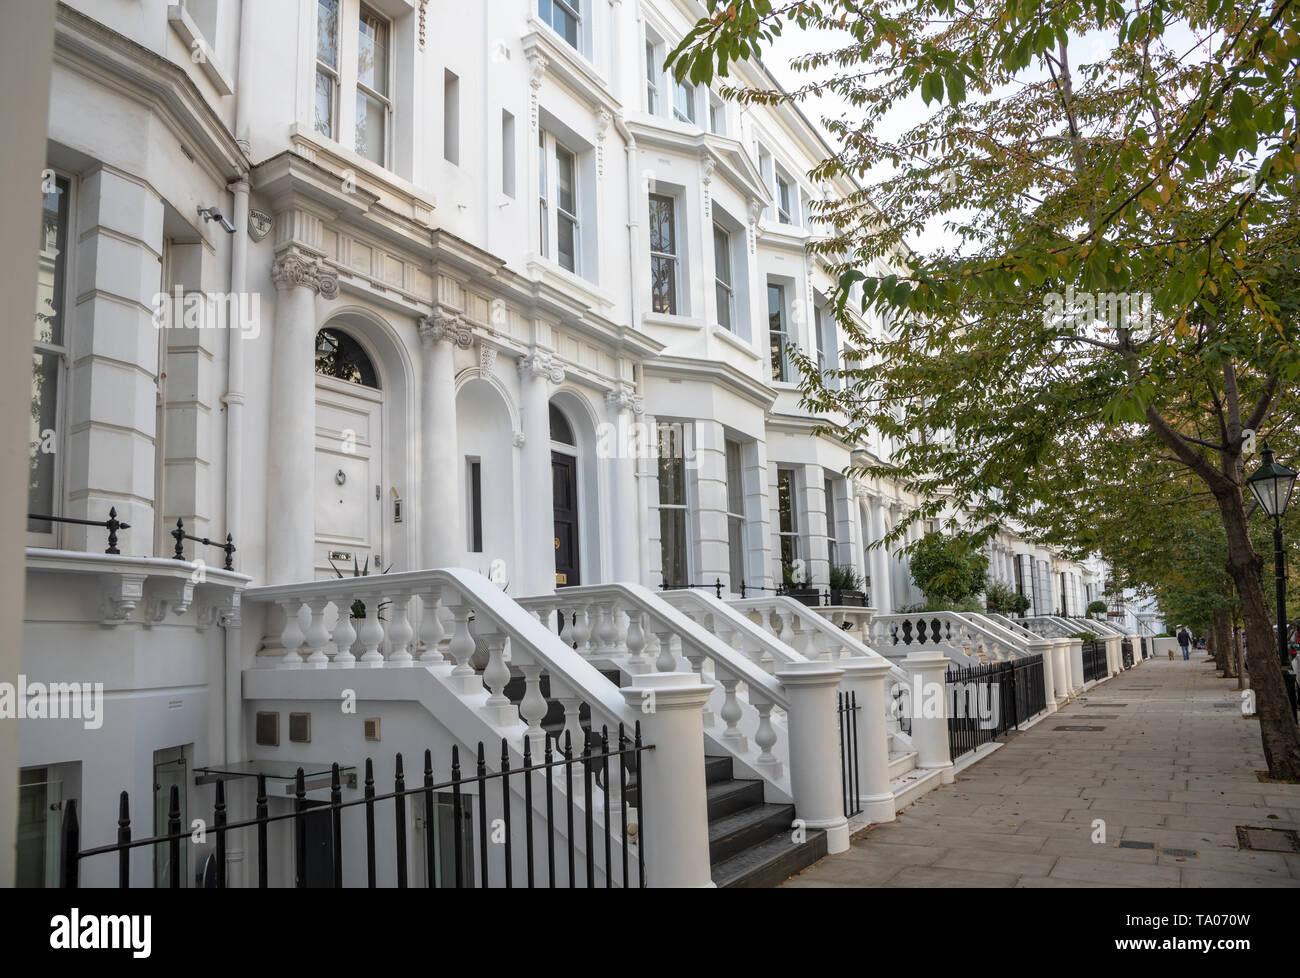 Bianco di lusso case a schiera lungo un viale alberato pavimentazione di pietra in una giornata autunnale. Londra, Regno Unito. Foto Stock